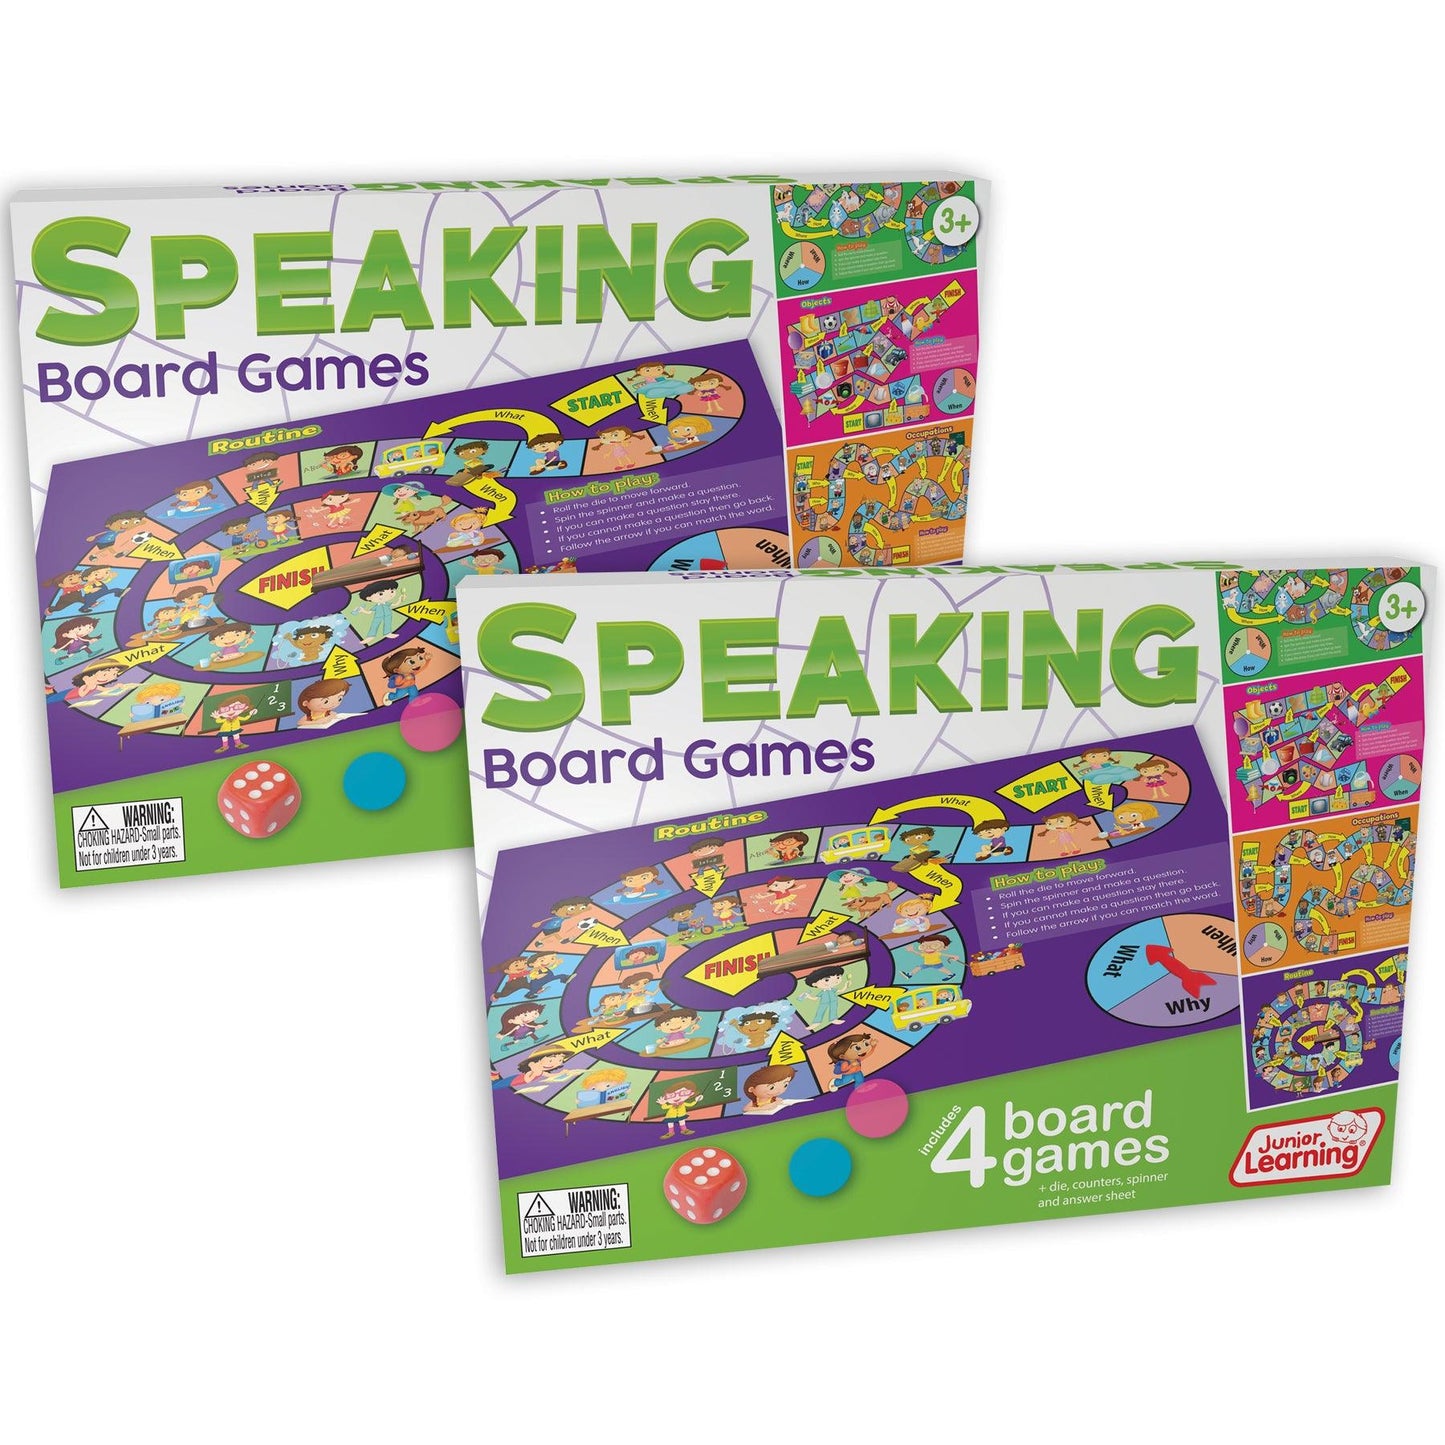 Speaking Board Games, Pack of 2 - Loomini